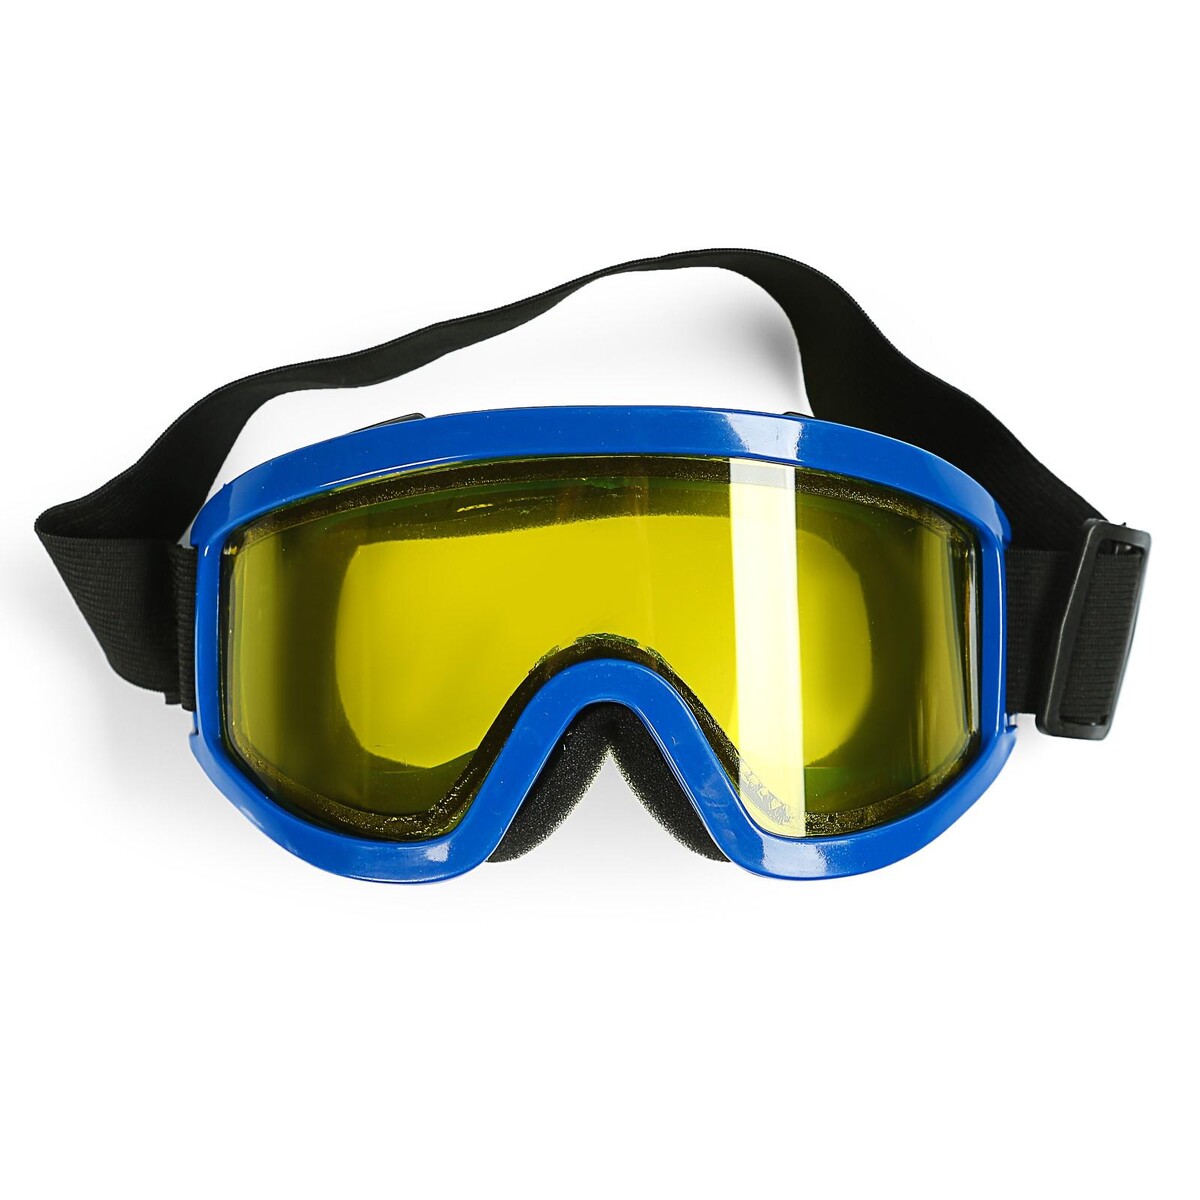 Очки-маска для езды на мототехнике, стекло двухслойное желтое, цвет синий очки маска для езды на мототехнике стекло золотой хром синий ом 11